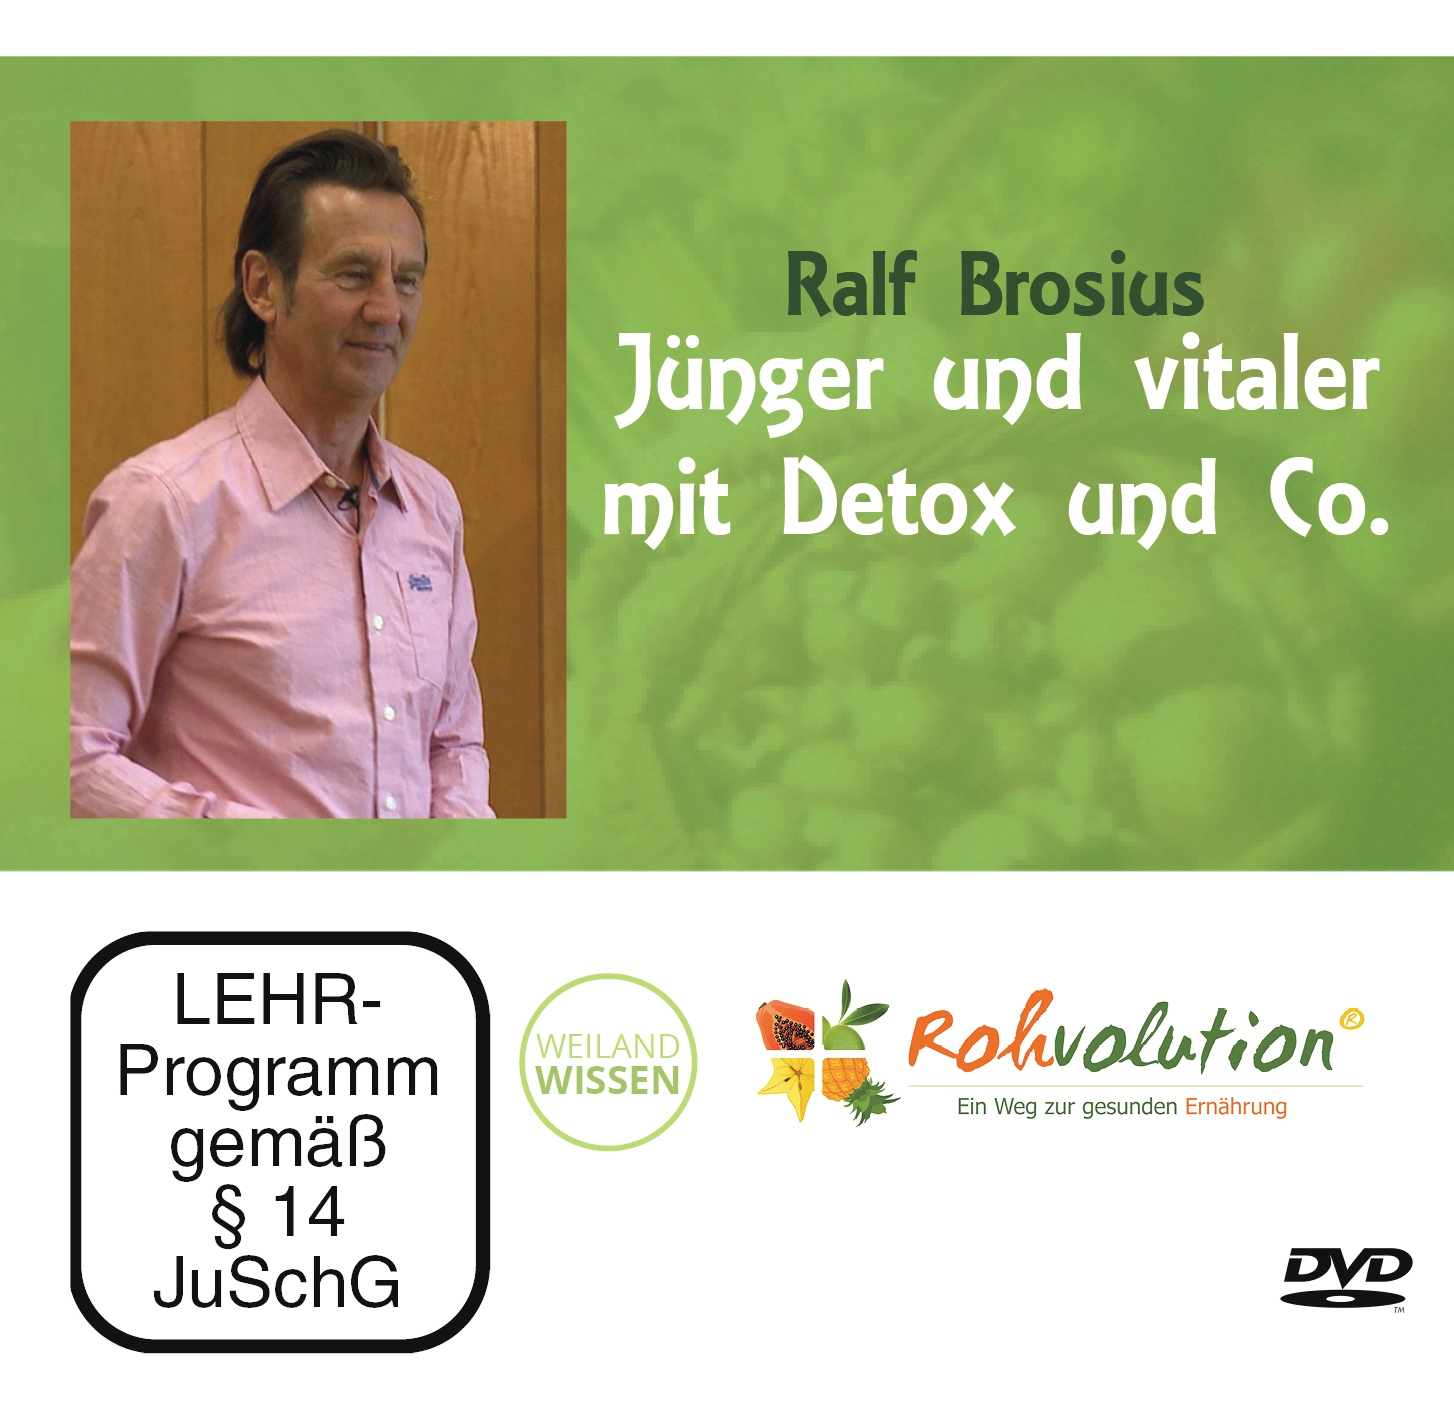 DVD Vortrag – Jünger, vitaler mit Detox & Co.